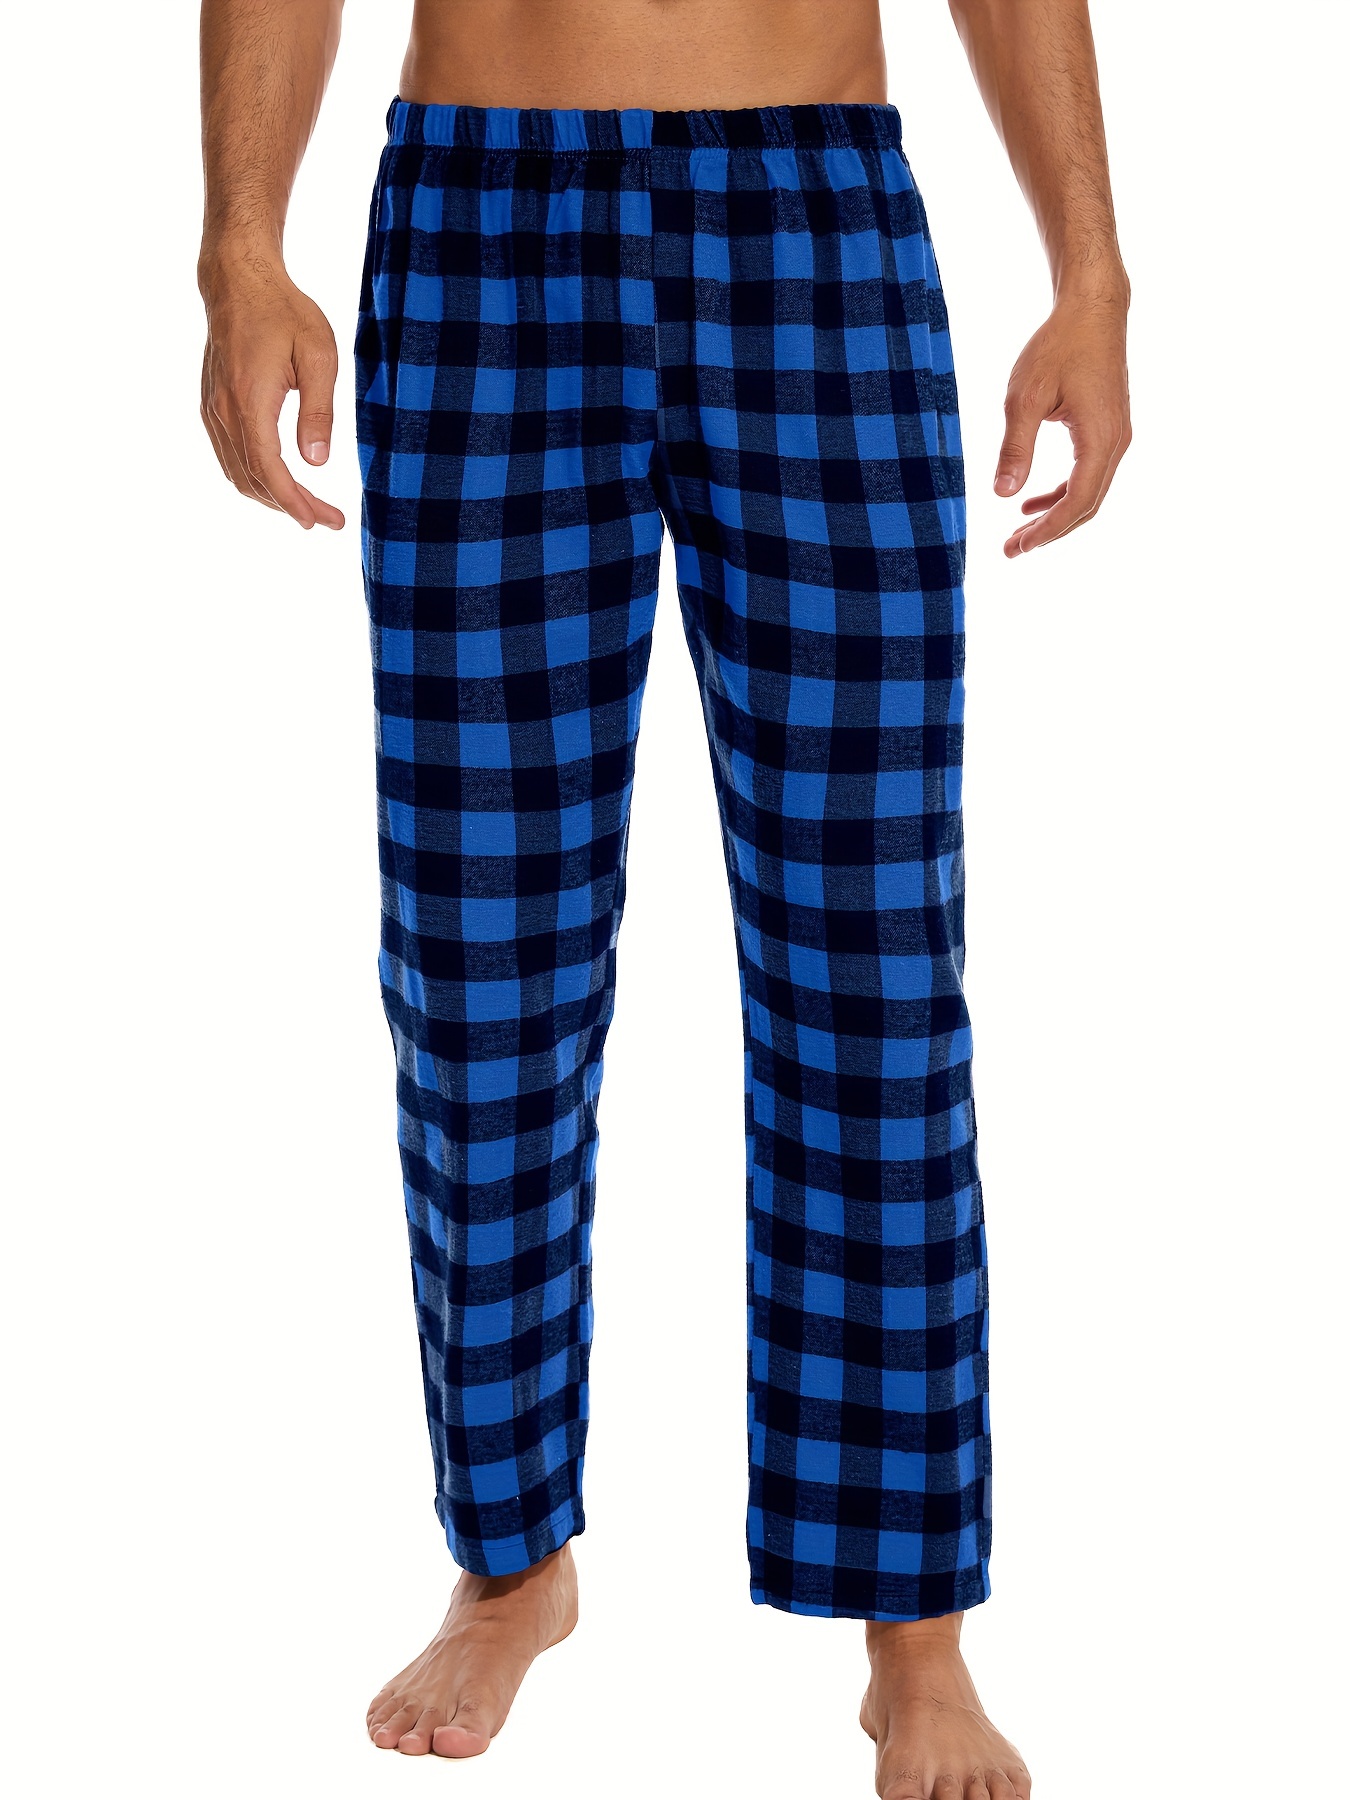 HiddenValor Mens Plaid Cotton Pajama Lounge Pants (Black/Blue